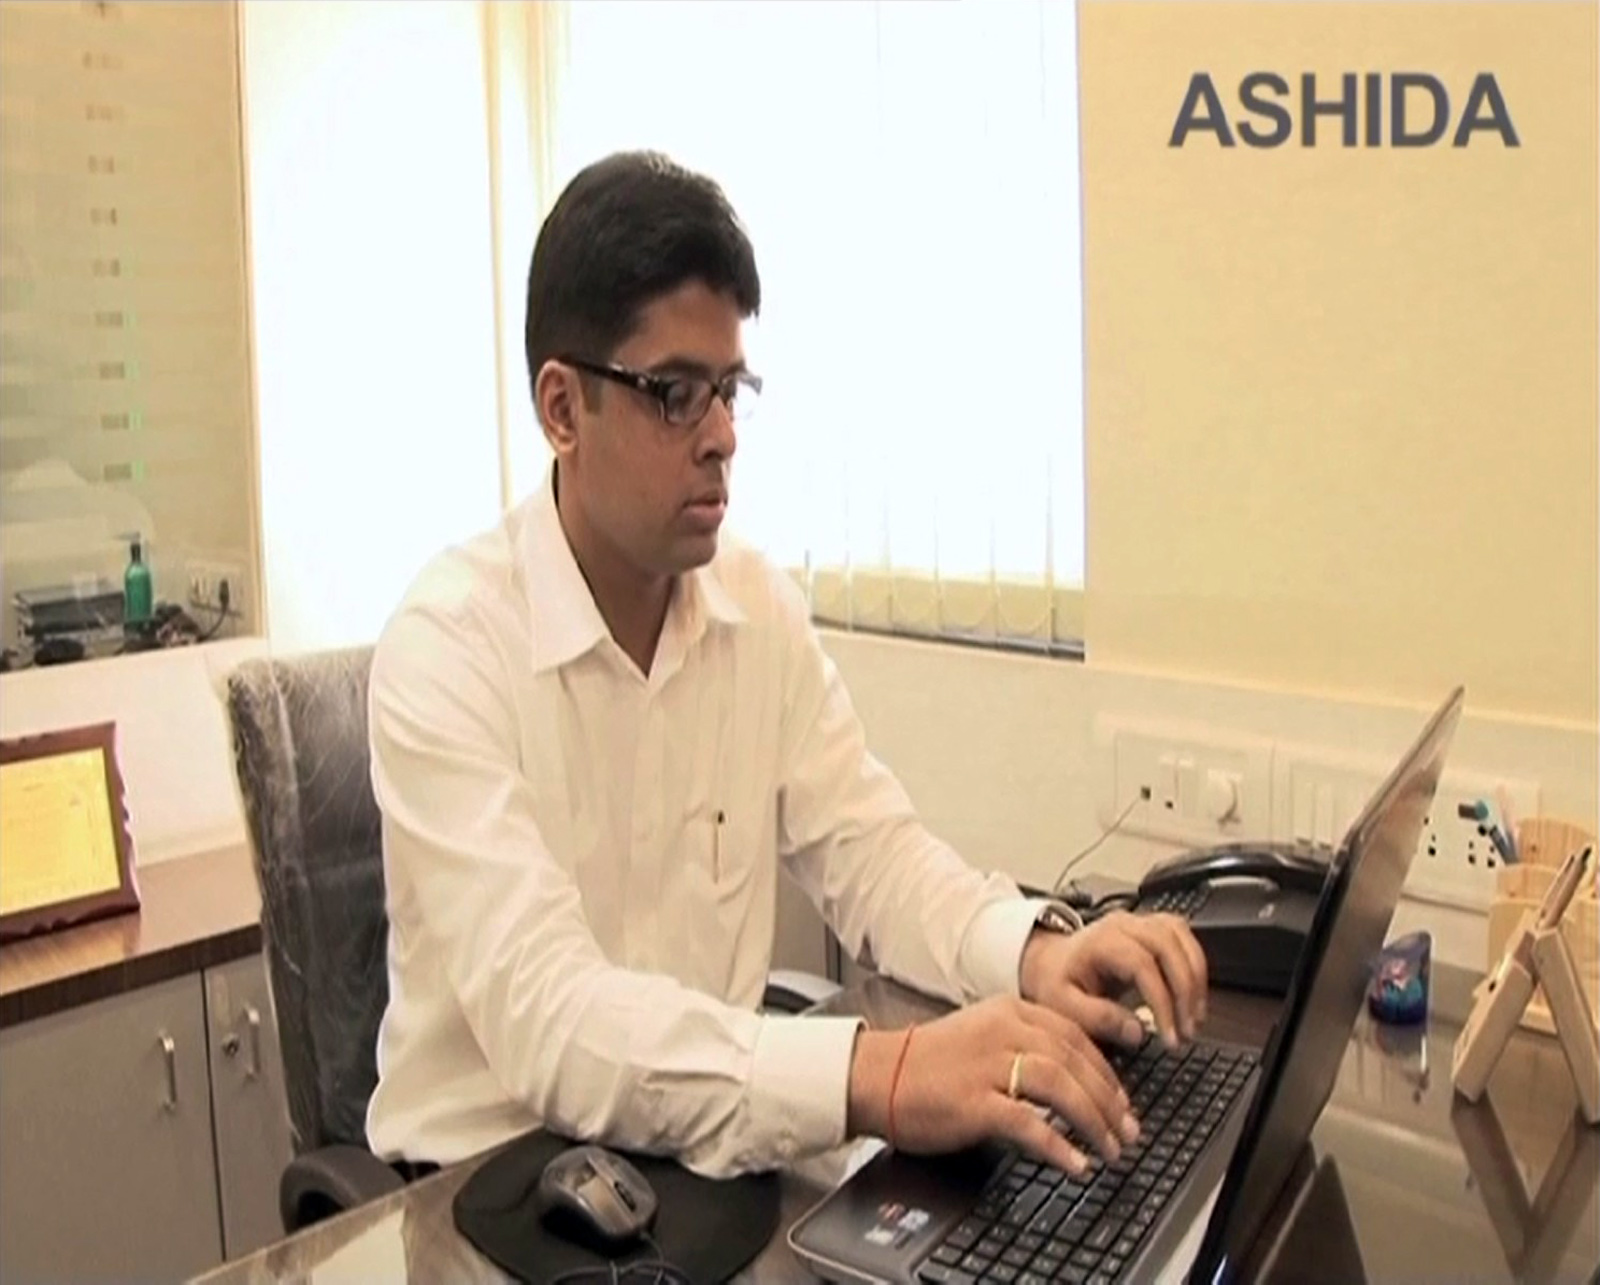 Ashida Electronics Employee working